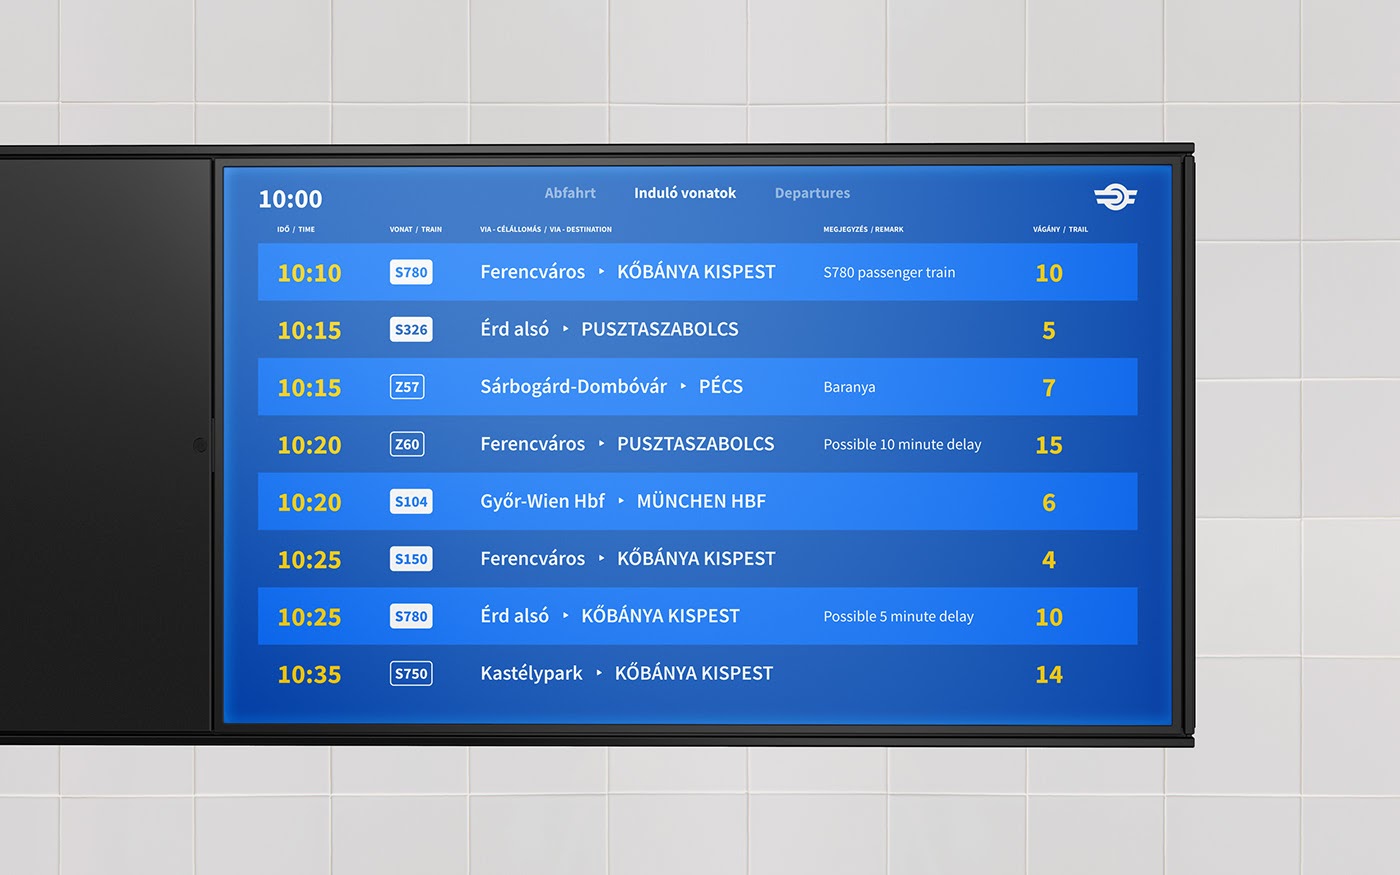 匈牙利国家铁路客运在线售票平台视觉设计